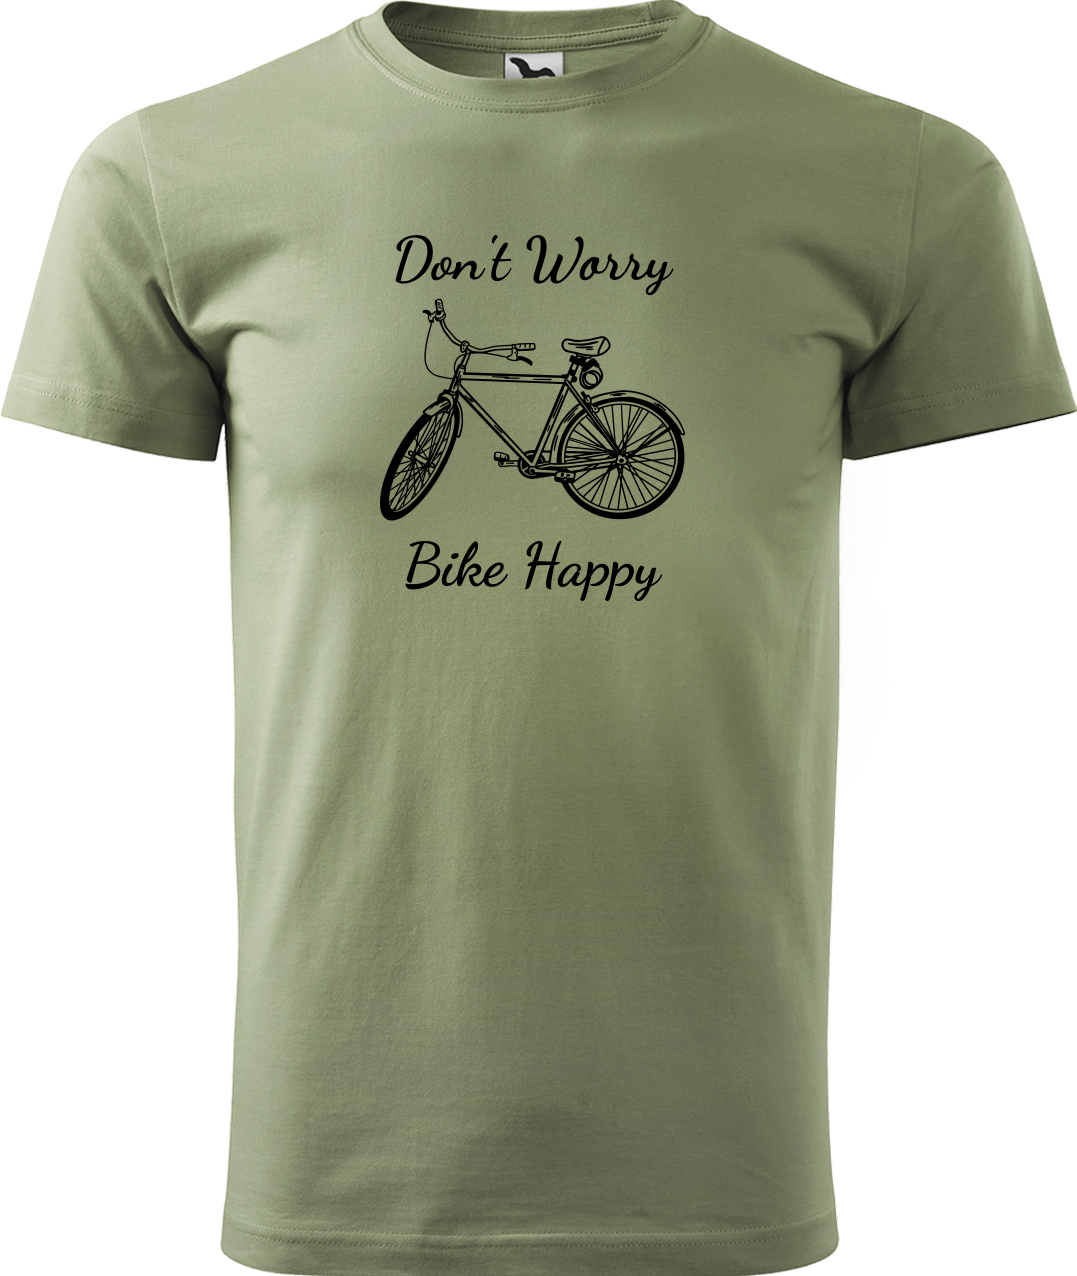 Pánské tričko s kolem - Don't Worry Bike Happy Velikost: L, Barva: Světlá khaki (28)